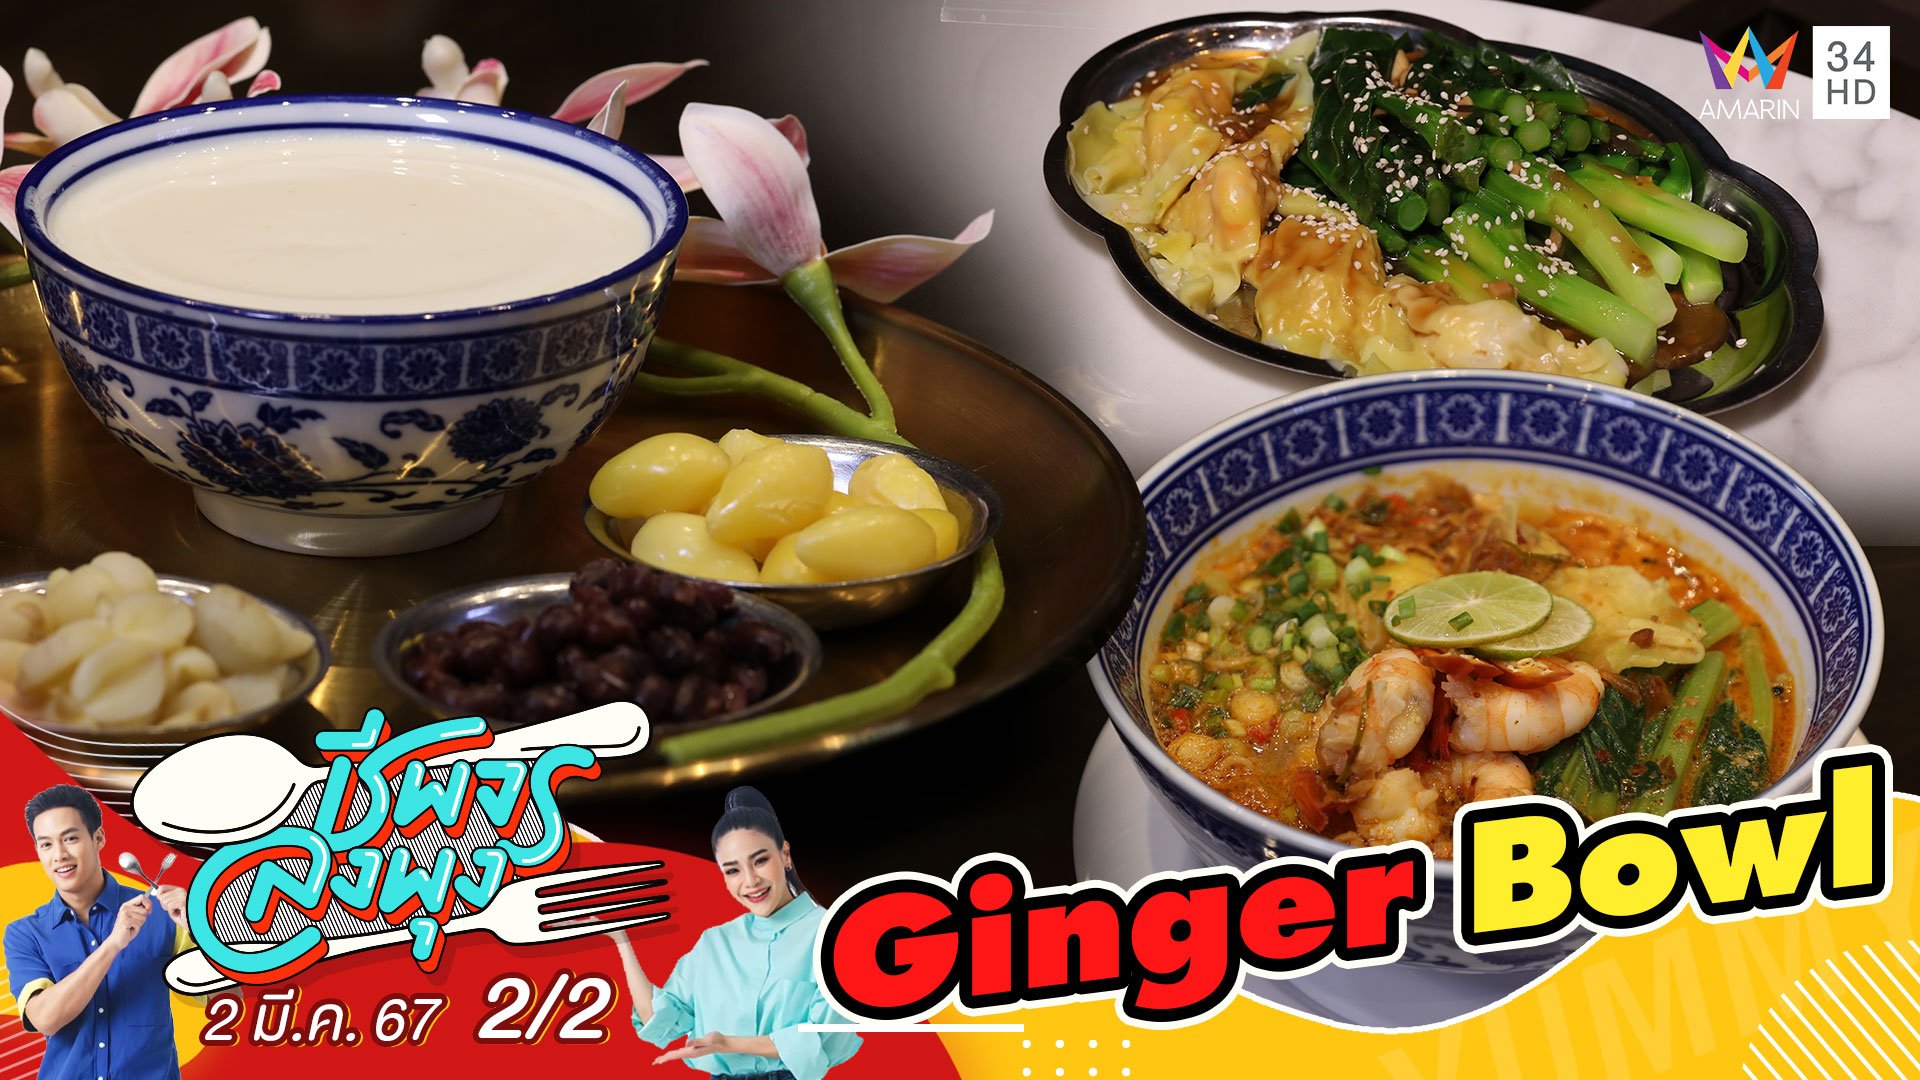 "ร้าน Ginger Bowl" ร้านอาหารจีนสไตล์ฮ่องกง | ชีพจรลงพุง | 2 มี.ค. 67 (2/2) | AMARIN TVHD34